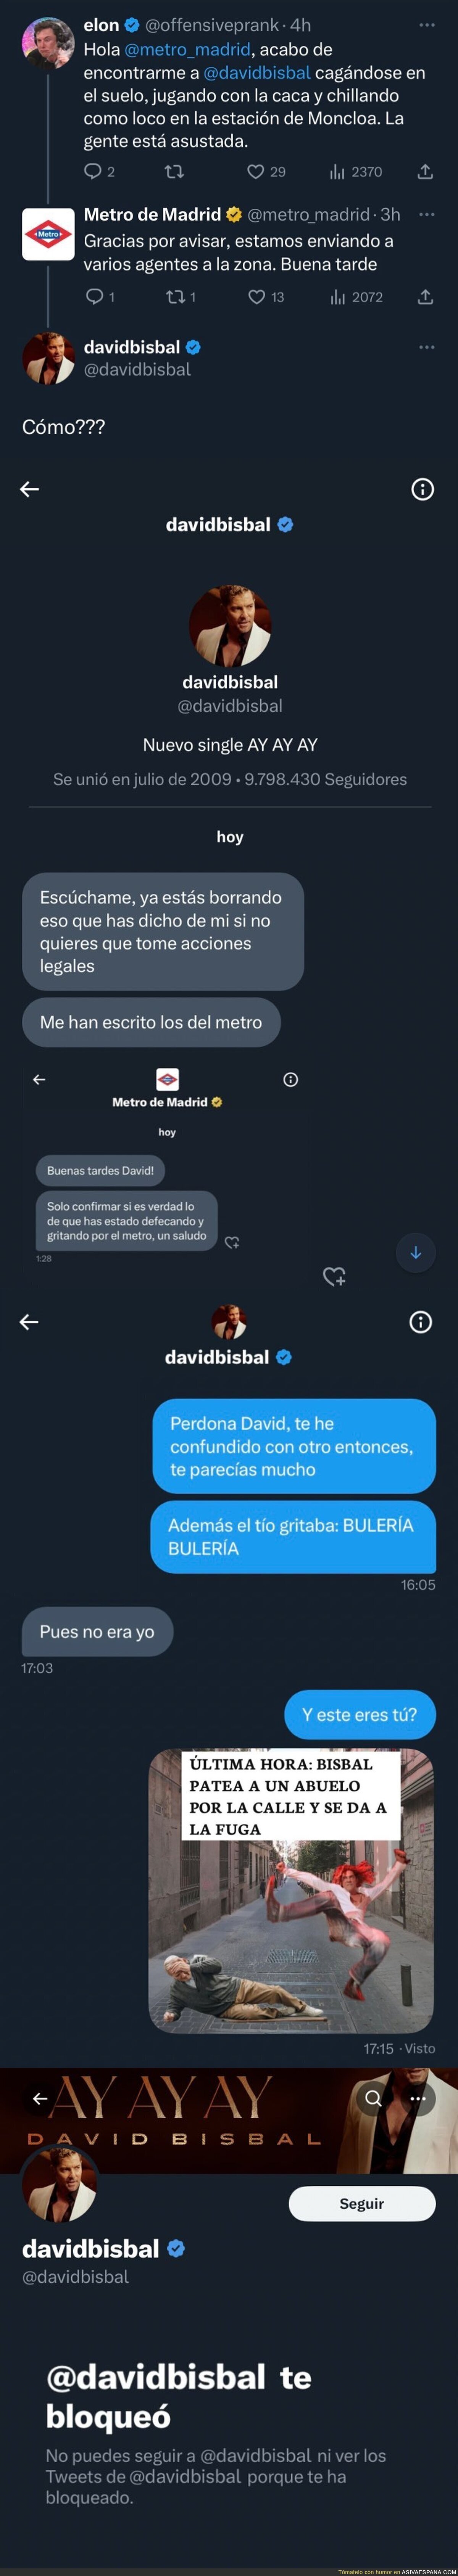 La divertida conversación de David Bisbal en una conversación con el Metro de Madrid